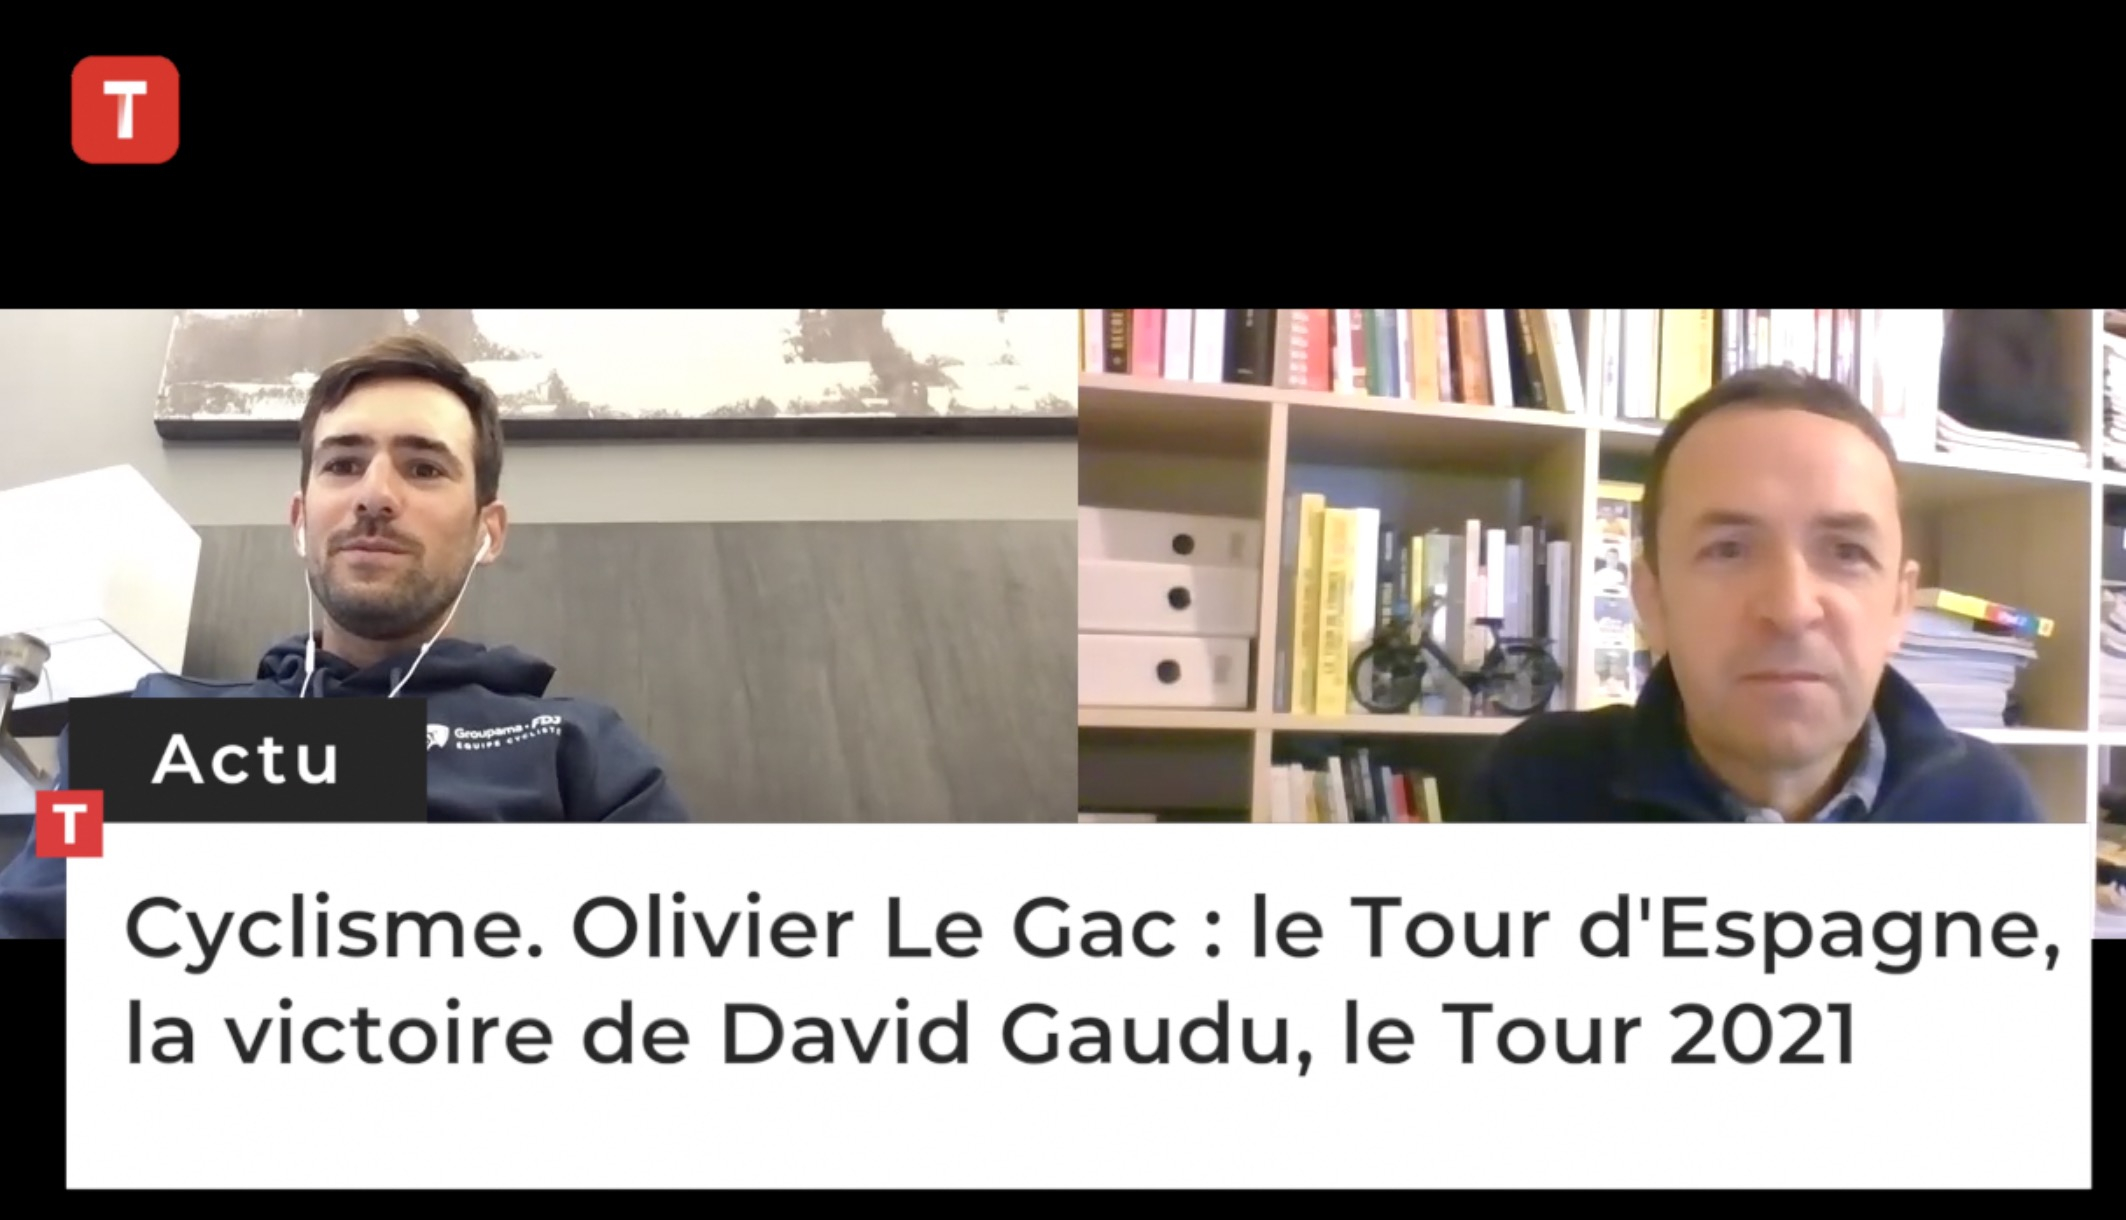 Cyclisme. Olivier Le Gac : le Tour d'Espagne, la victoire de David Gaudu, le Tour 2021 (Le Télégramme)